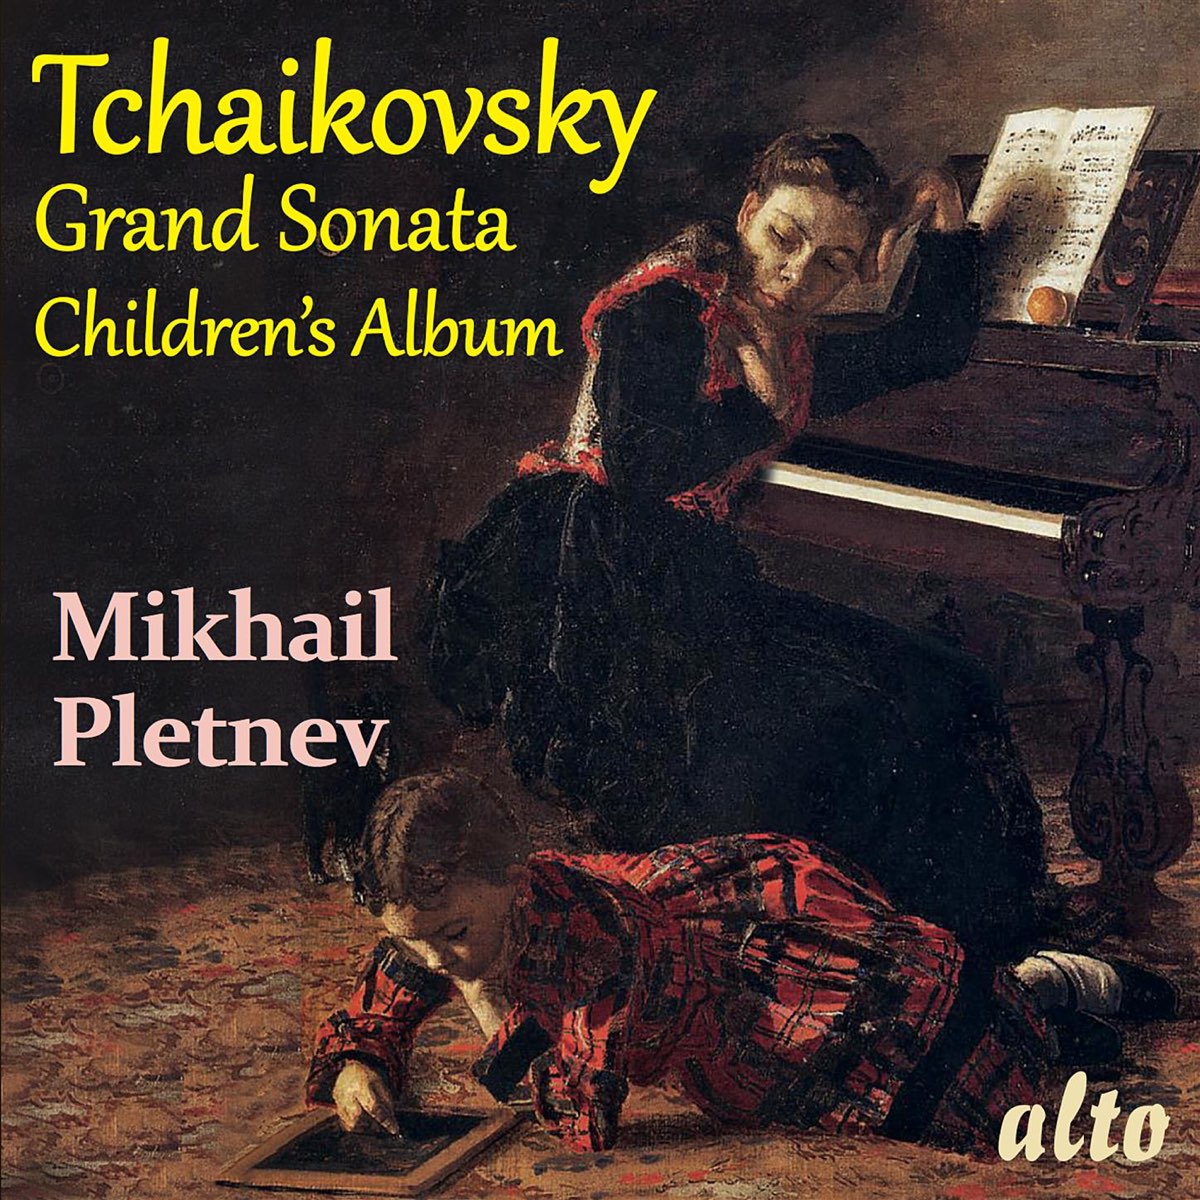 Tchaikovsky - GRAND SONATA - CHILDREN'S ALBUM CD MIKHAIL PLETNEV